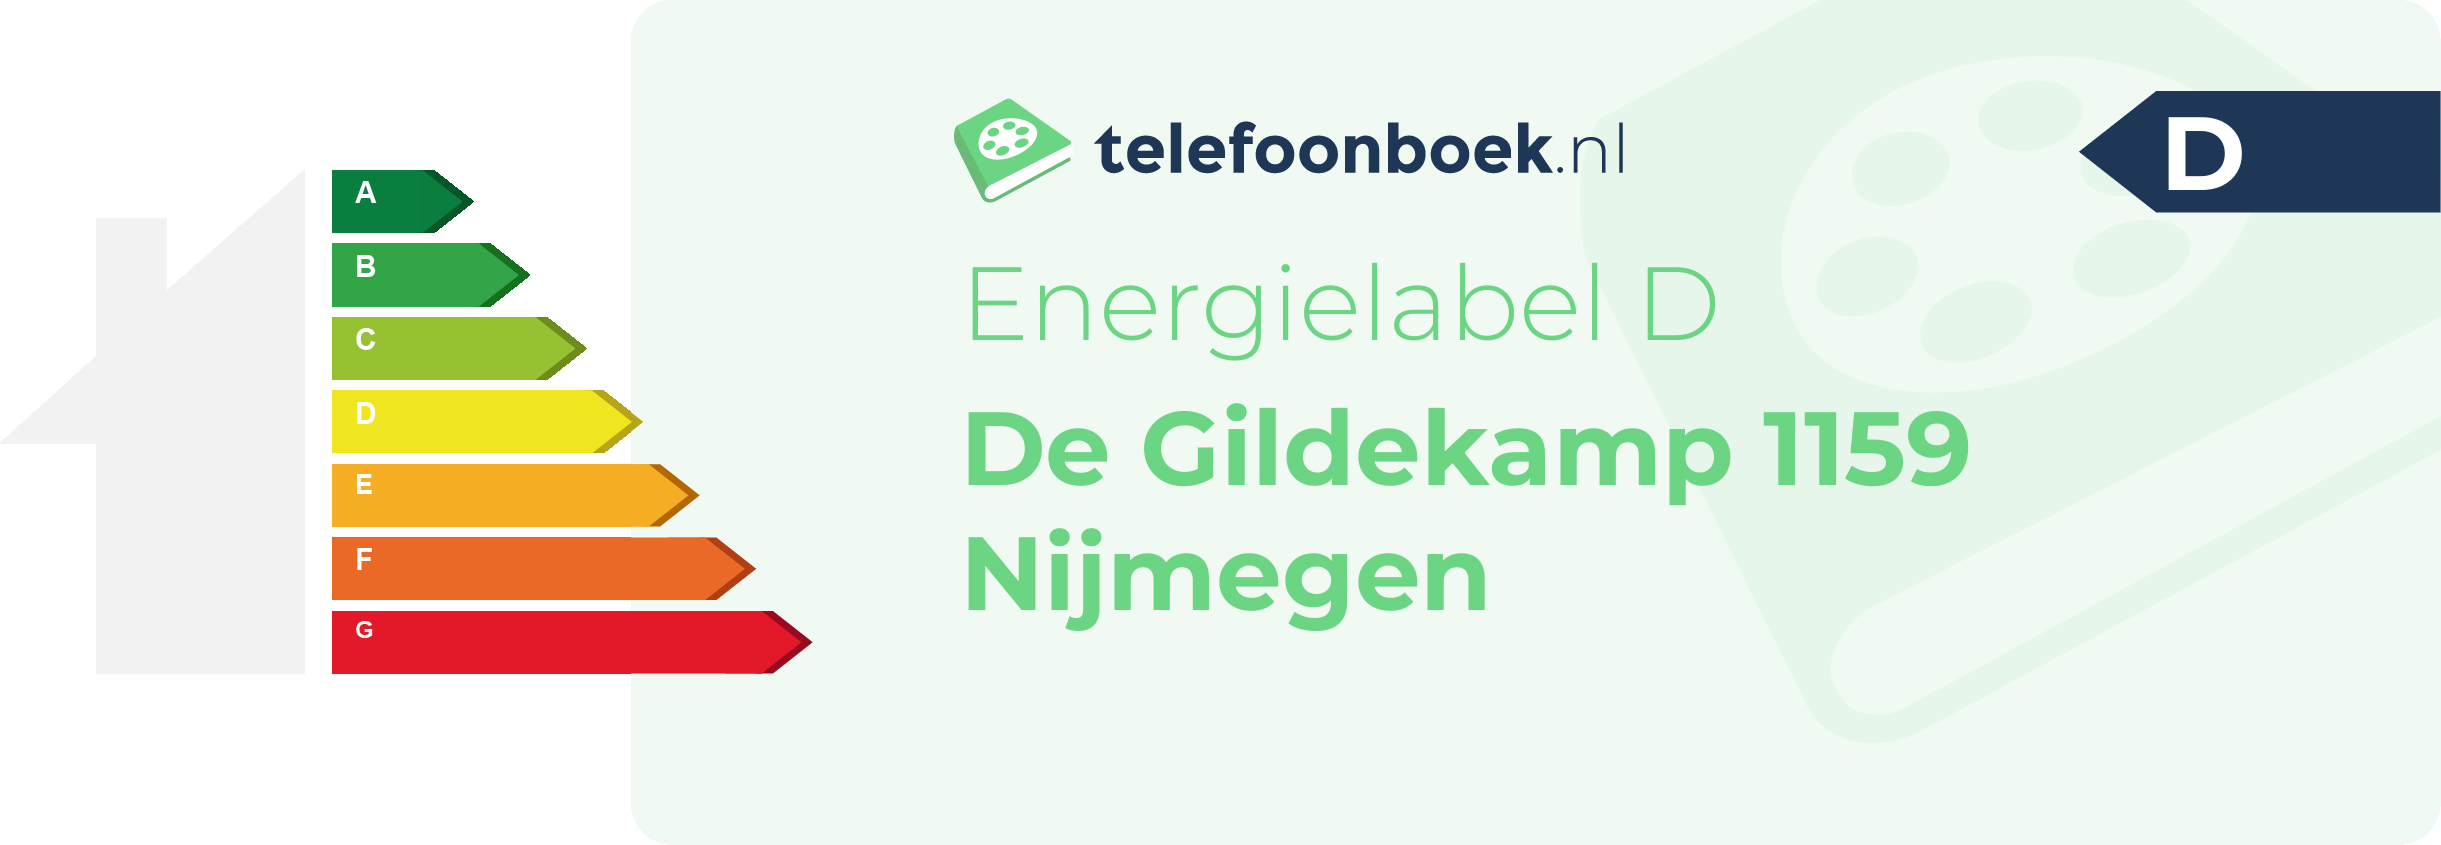 Energielabel De Gildekamp 1159 Nijmegen